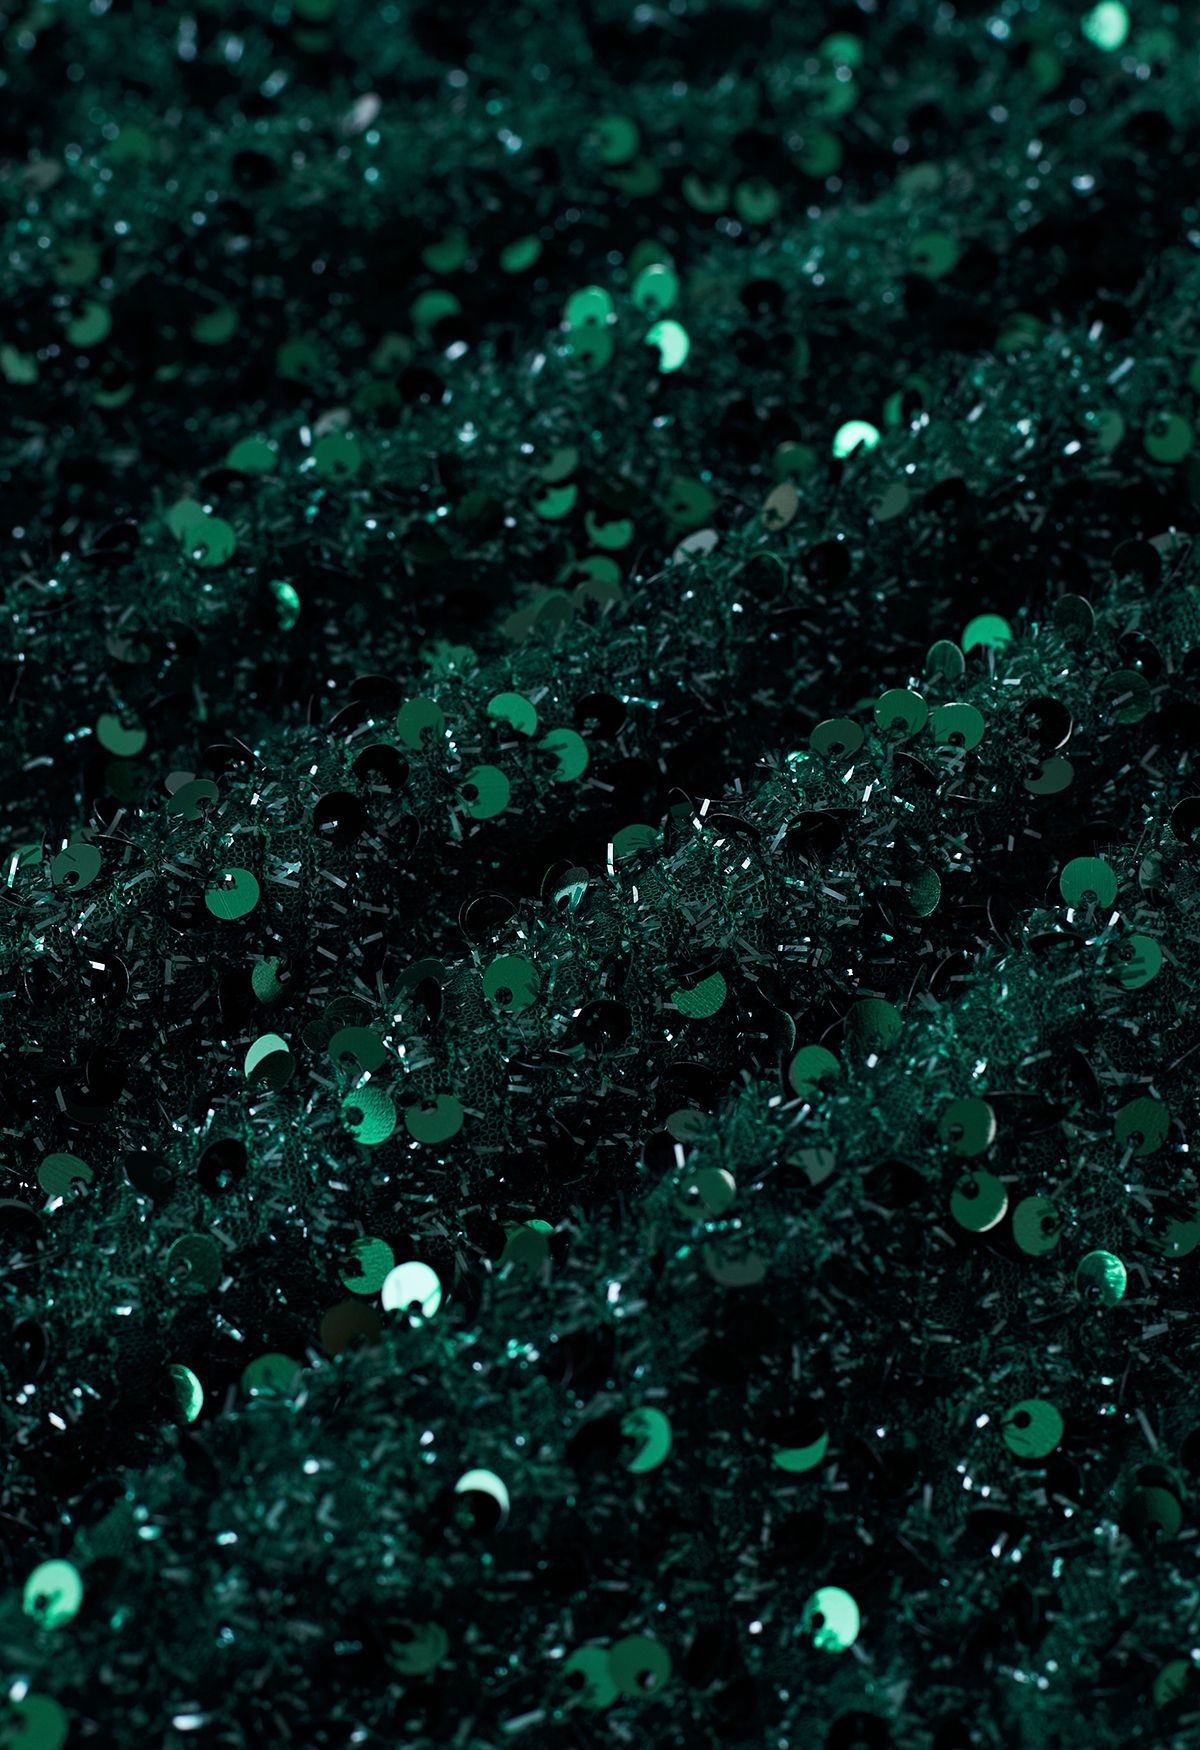 Rüschen-Ein-Schulter-Kleid mit buntem Paillettenbesatz in Smaragd